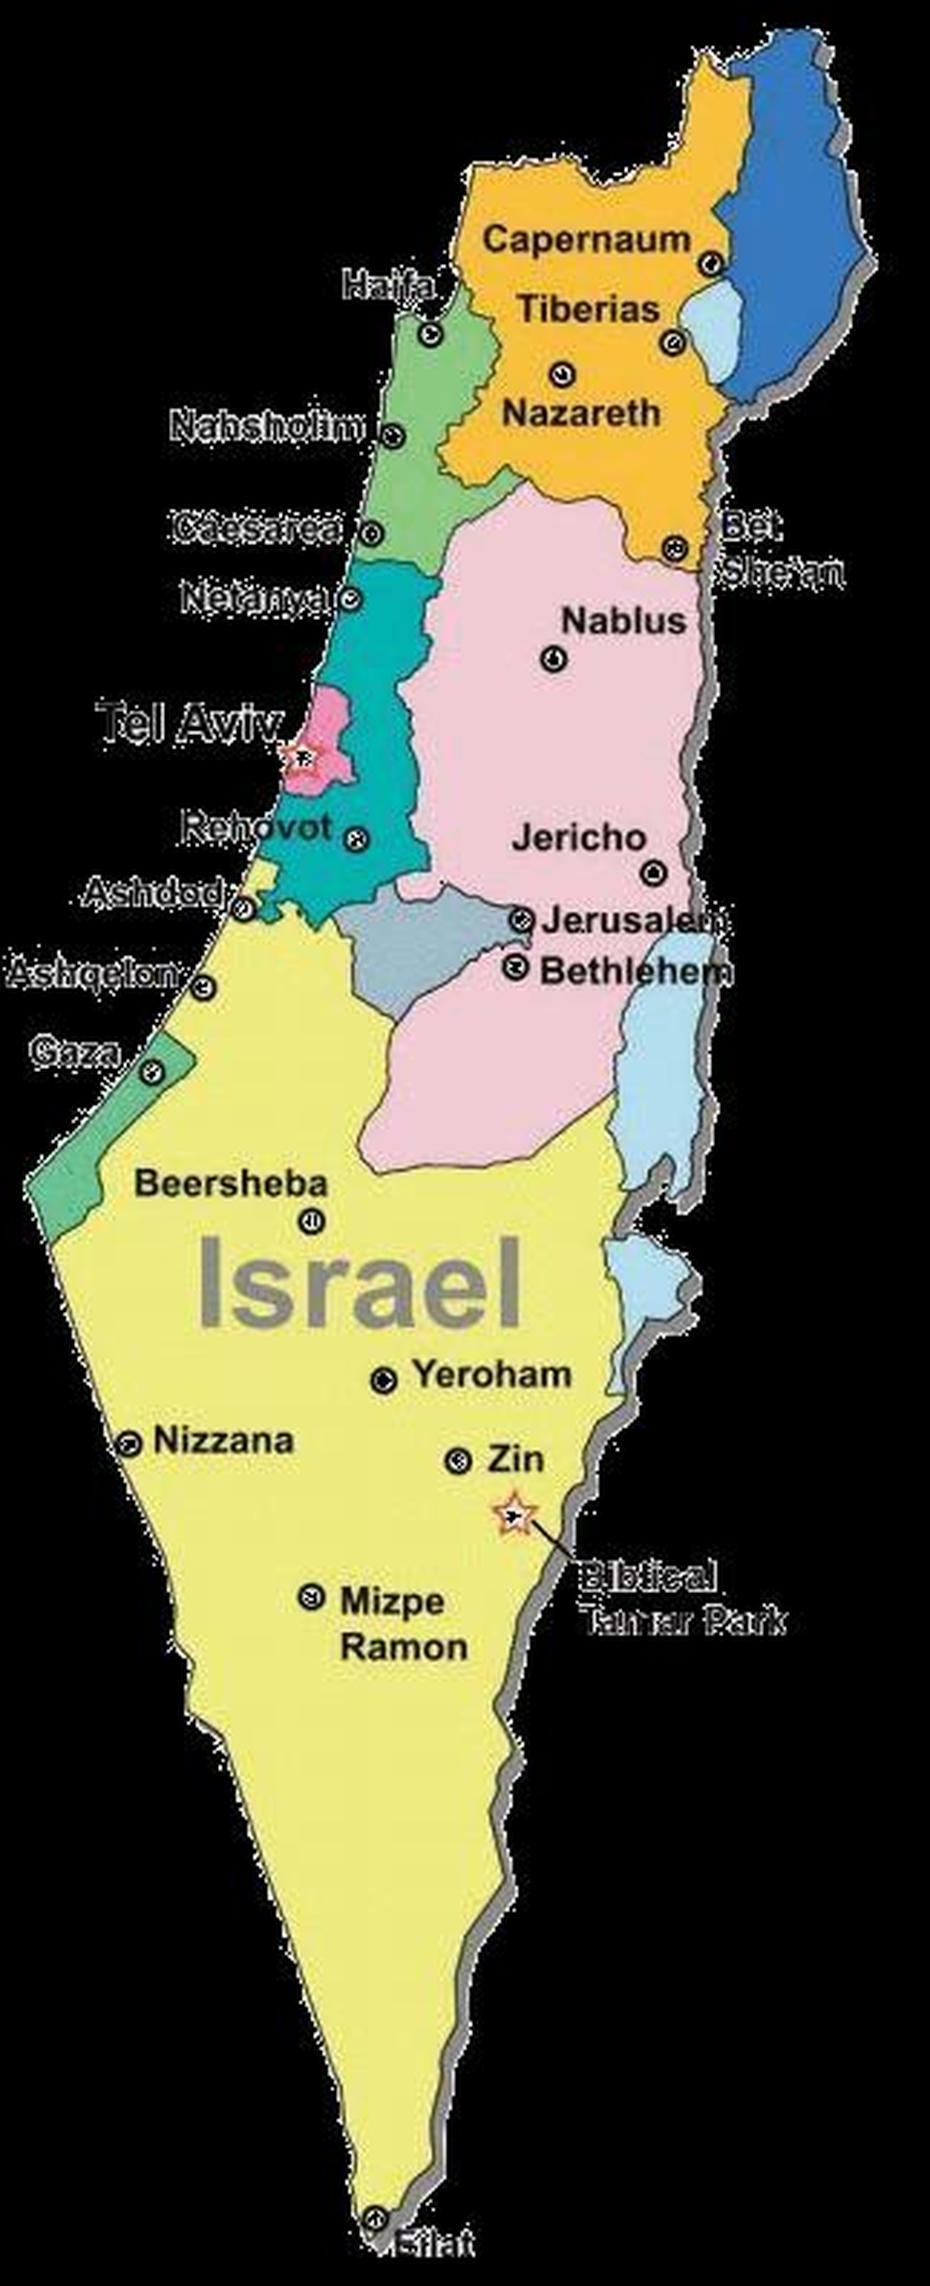 About Biblical Tamar Park In Israel | Blossoming Rose, Tamra, Israel, Kibbutz  Galed, Benjamin Netanyahu  Children